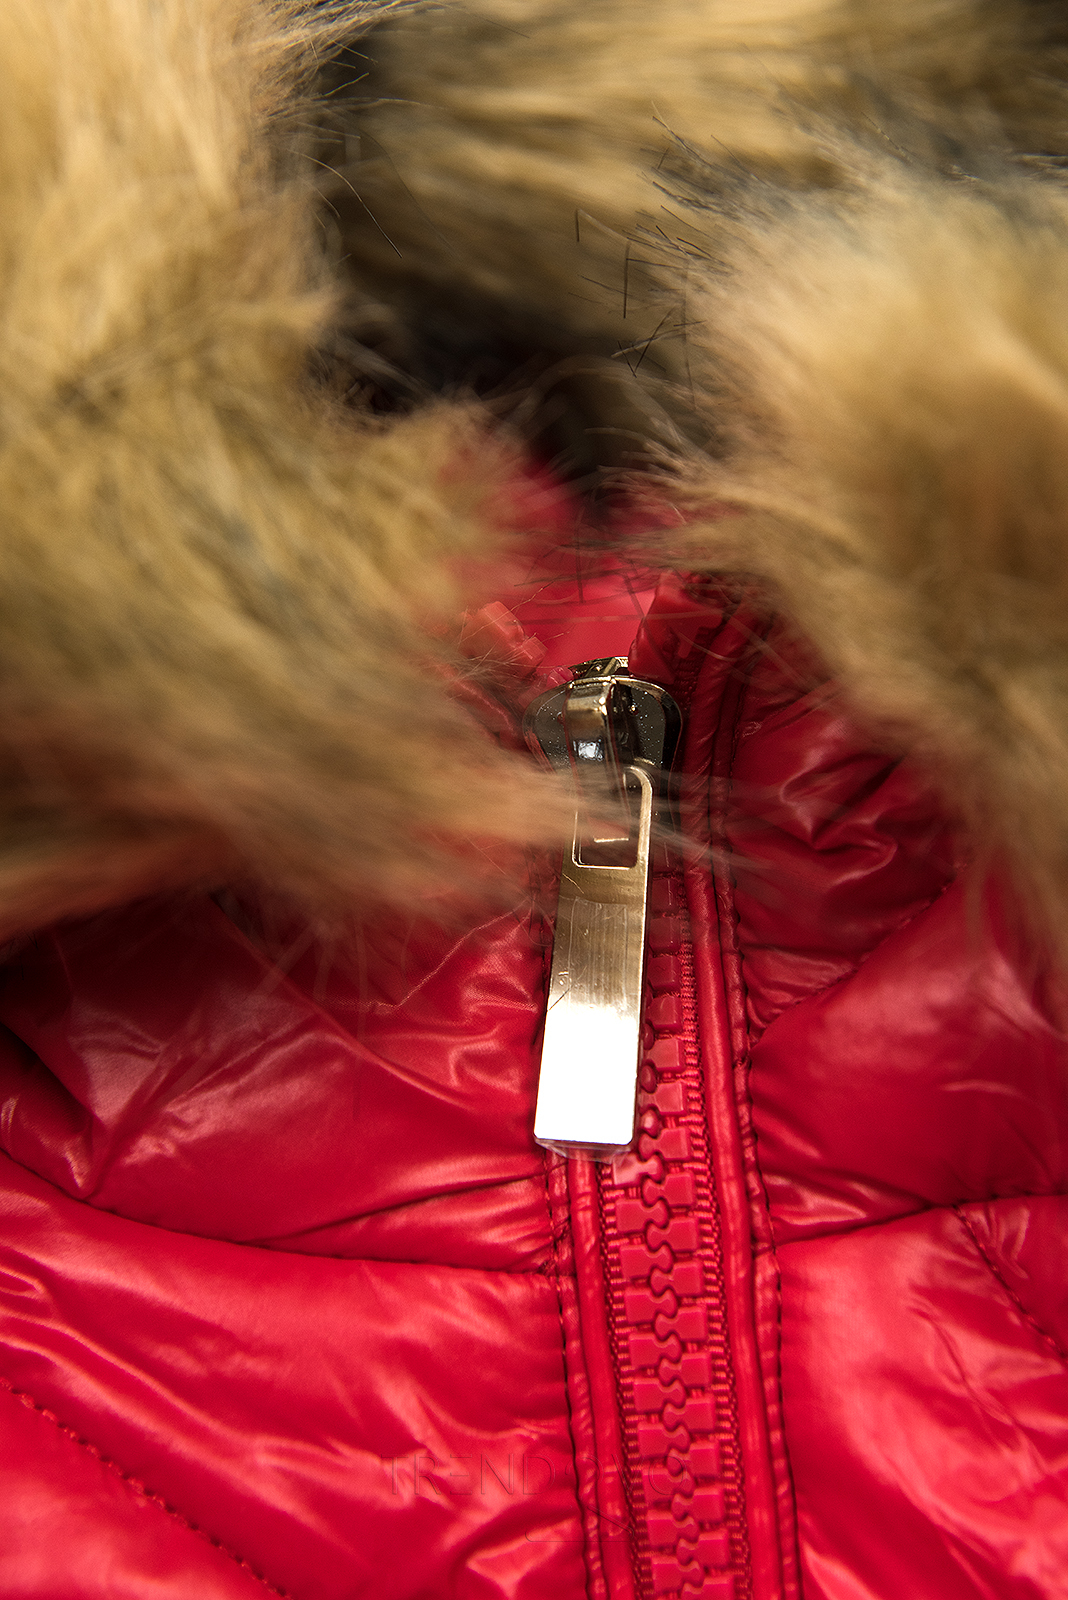 Červená lesklá zimní bunda s páskem